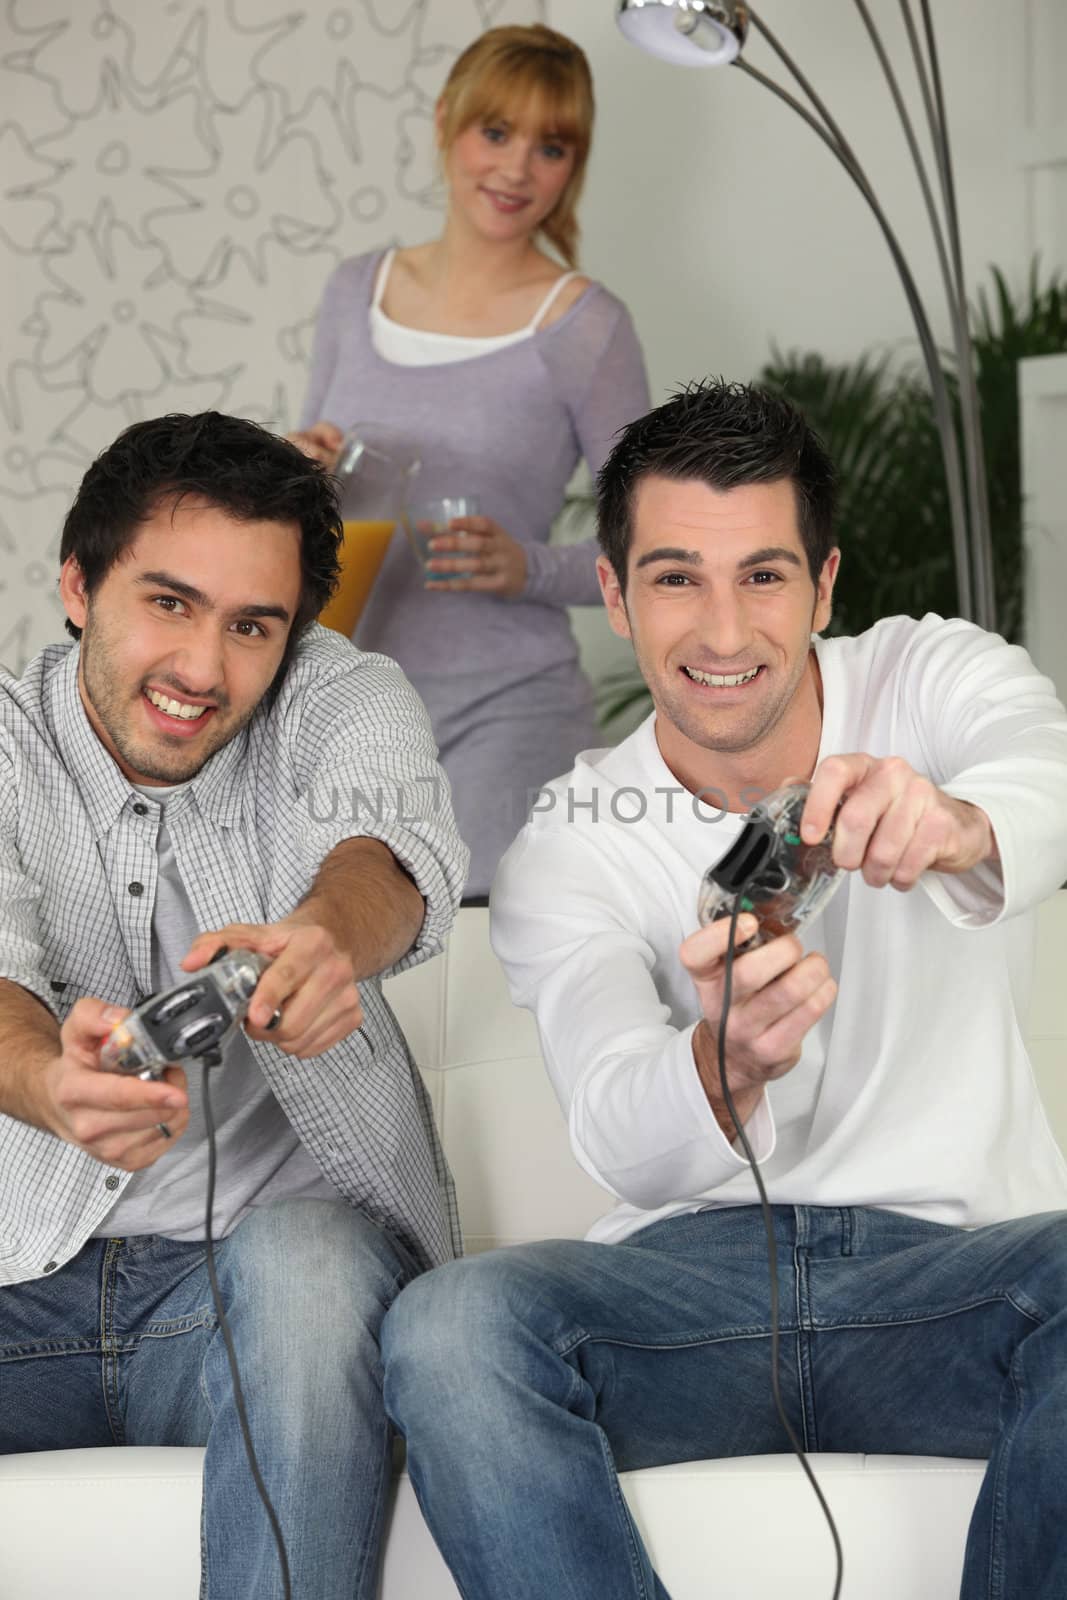 men playing video games